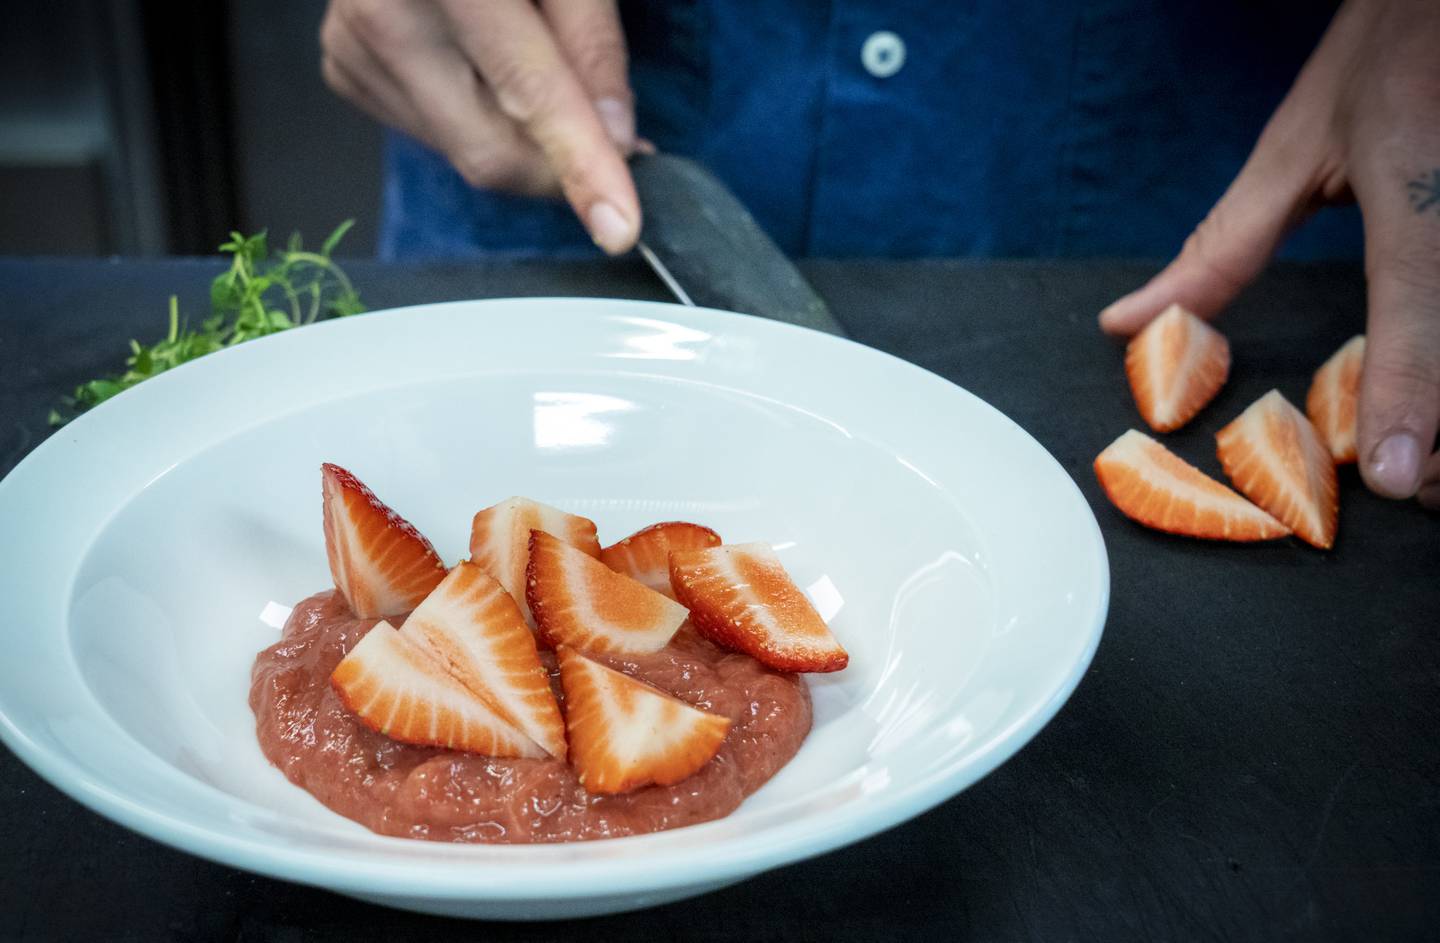 FRISKE OG FROSNE: Kompotten er laget med rabarbra og frosne jordbær, men friske bær tilsettes rett før servering. Foto: Ole Berg-Rusten / NTB